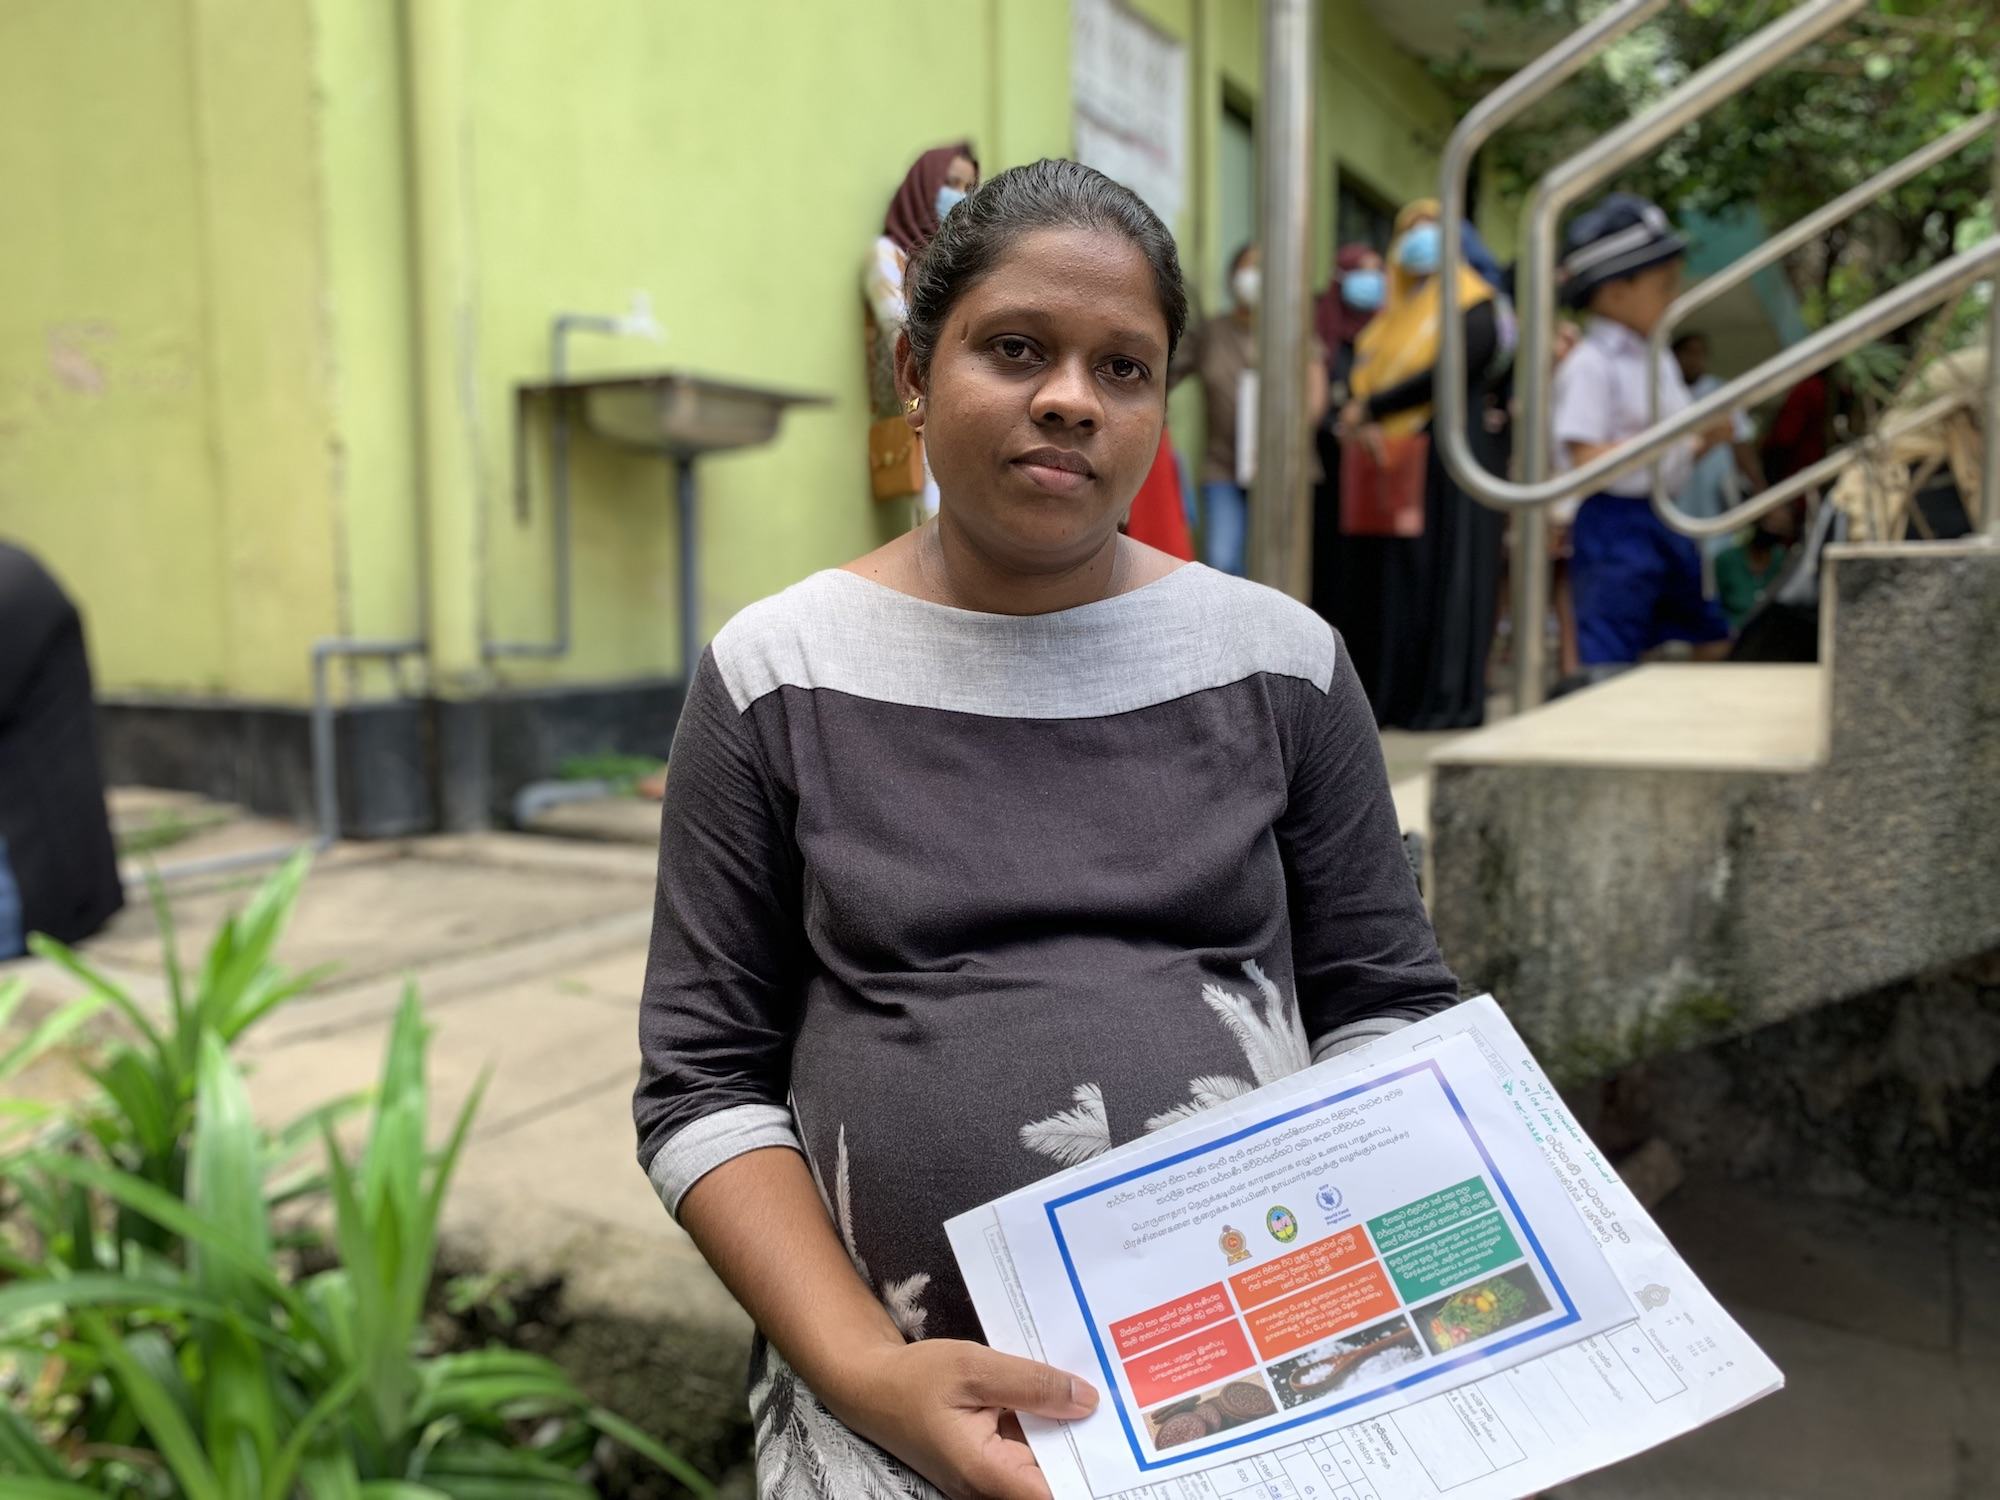 32 वर्षीय दुशान्ति अपने गर्भ में पल रहे बच्चे को लेकर चिन्तित हैं क्योंकि श्रीलंका के आर्थिक संकट से उपजी महंगाई के कारण भोजन और फल उनके परिवार की पहुँच से बाहर हो गए हैं. उन्हें WFP की आपातकालीन सहायता सहायता से फ़ूड वाउचर प्राप्त हुए हैं. 